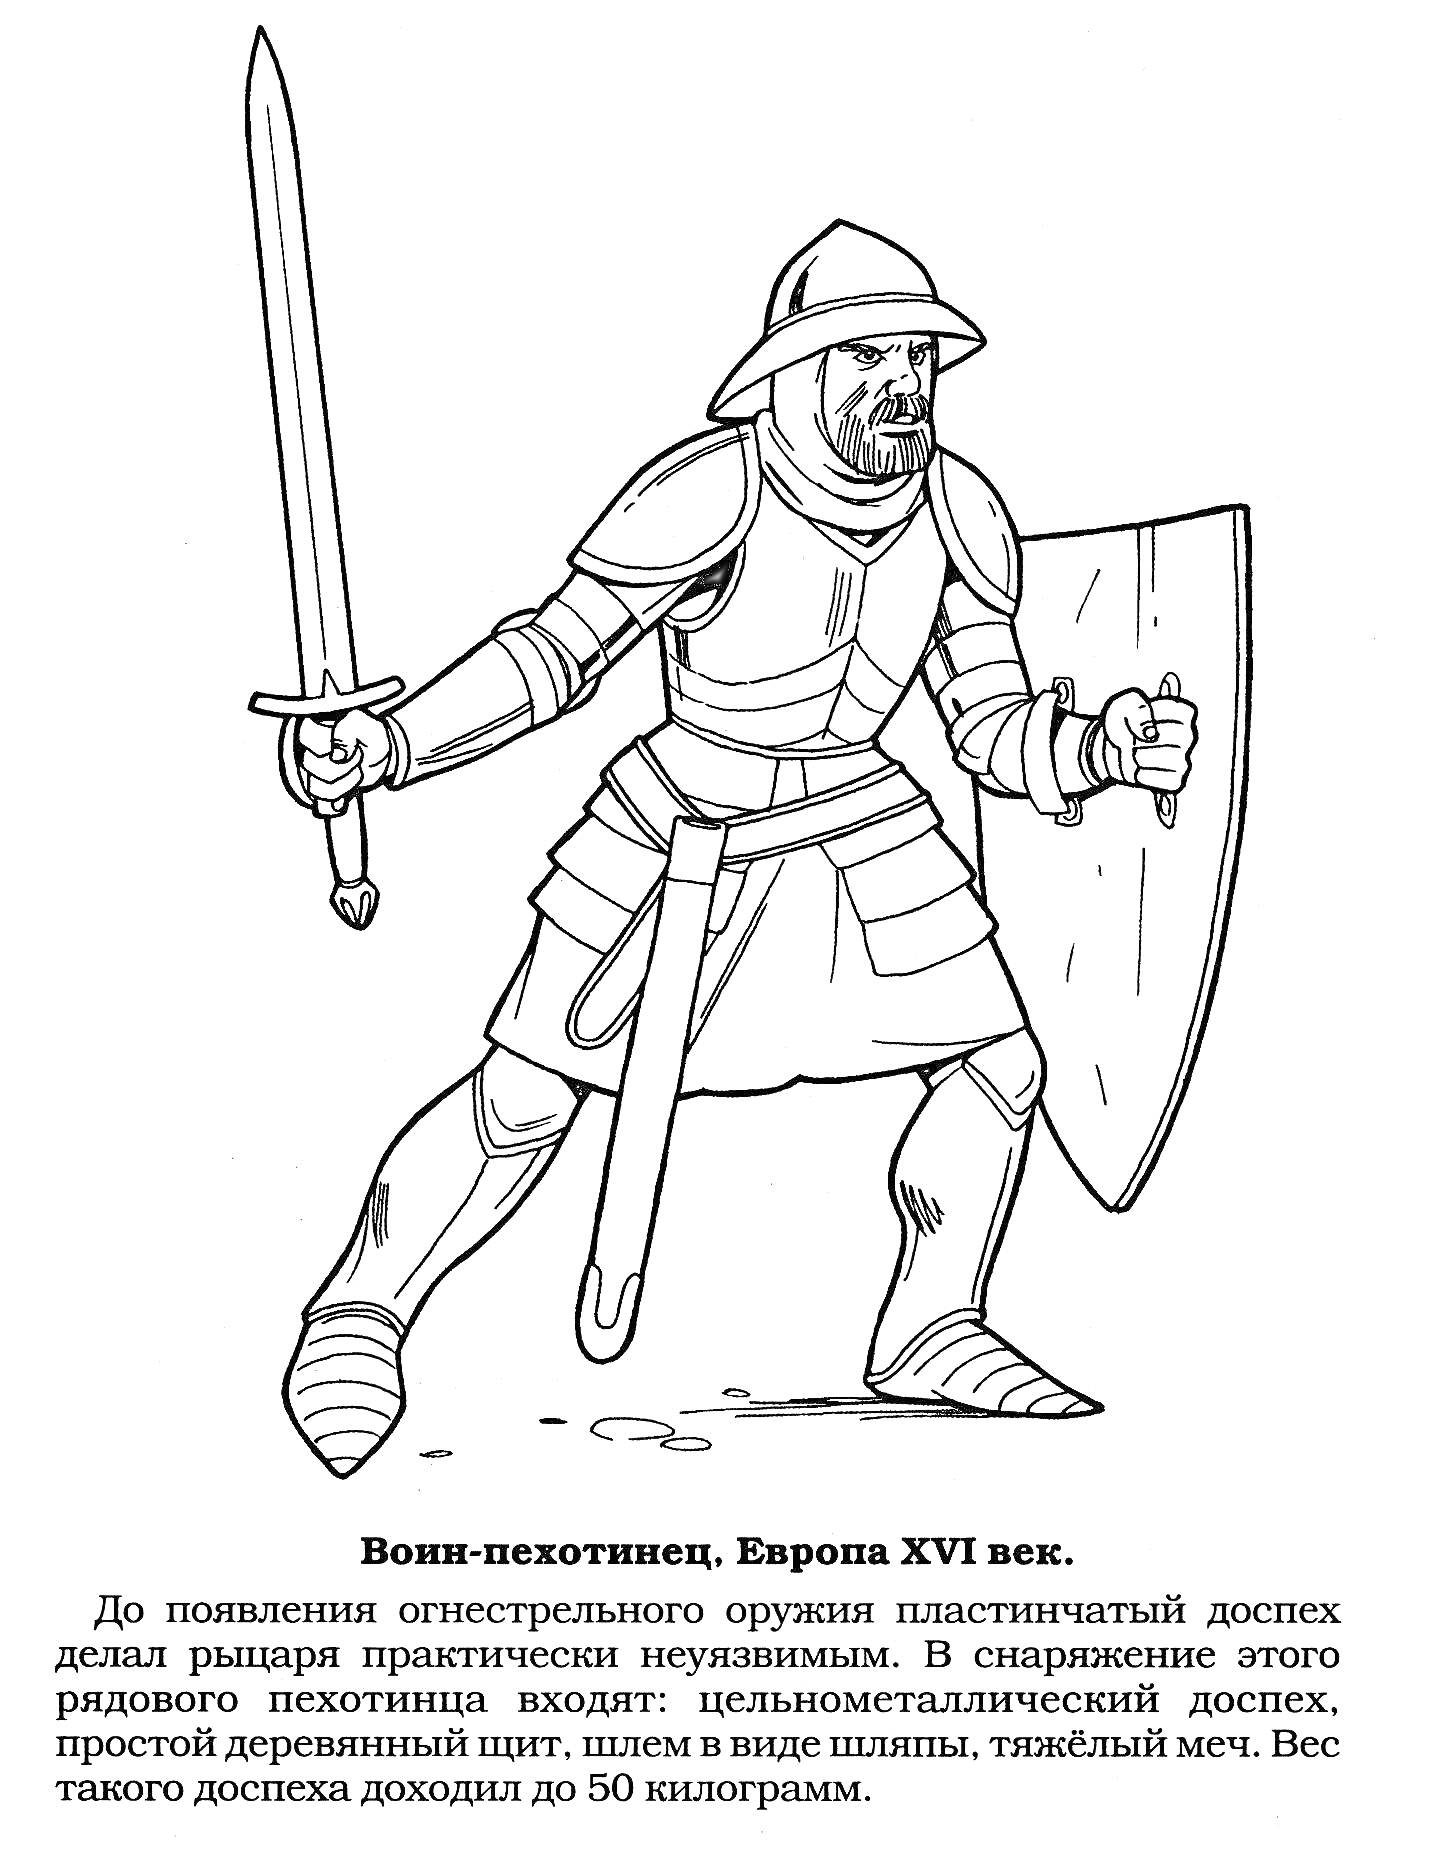 Раскраска Воин-пехотинец, Европа XVI век (меч, пластинчатый доспех, металлический шлем, деревянный щит)